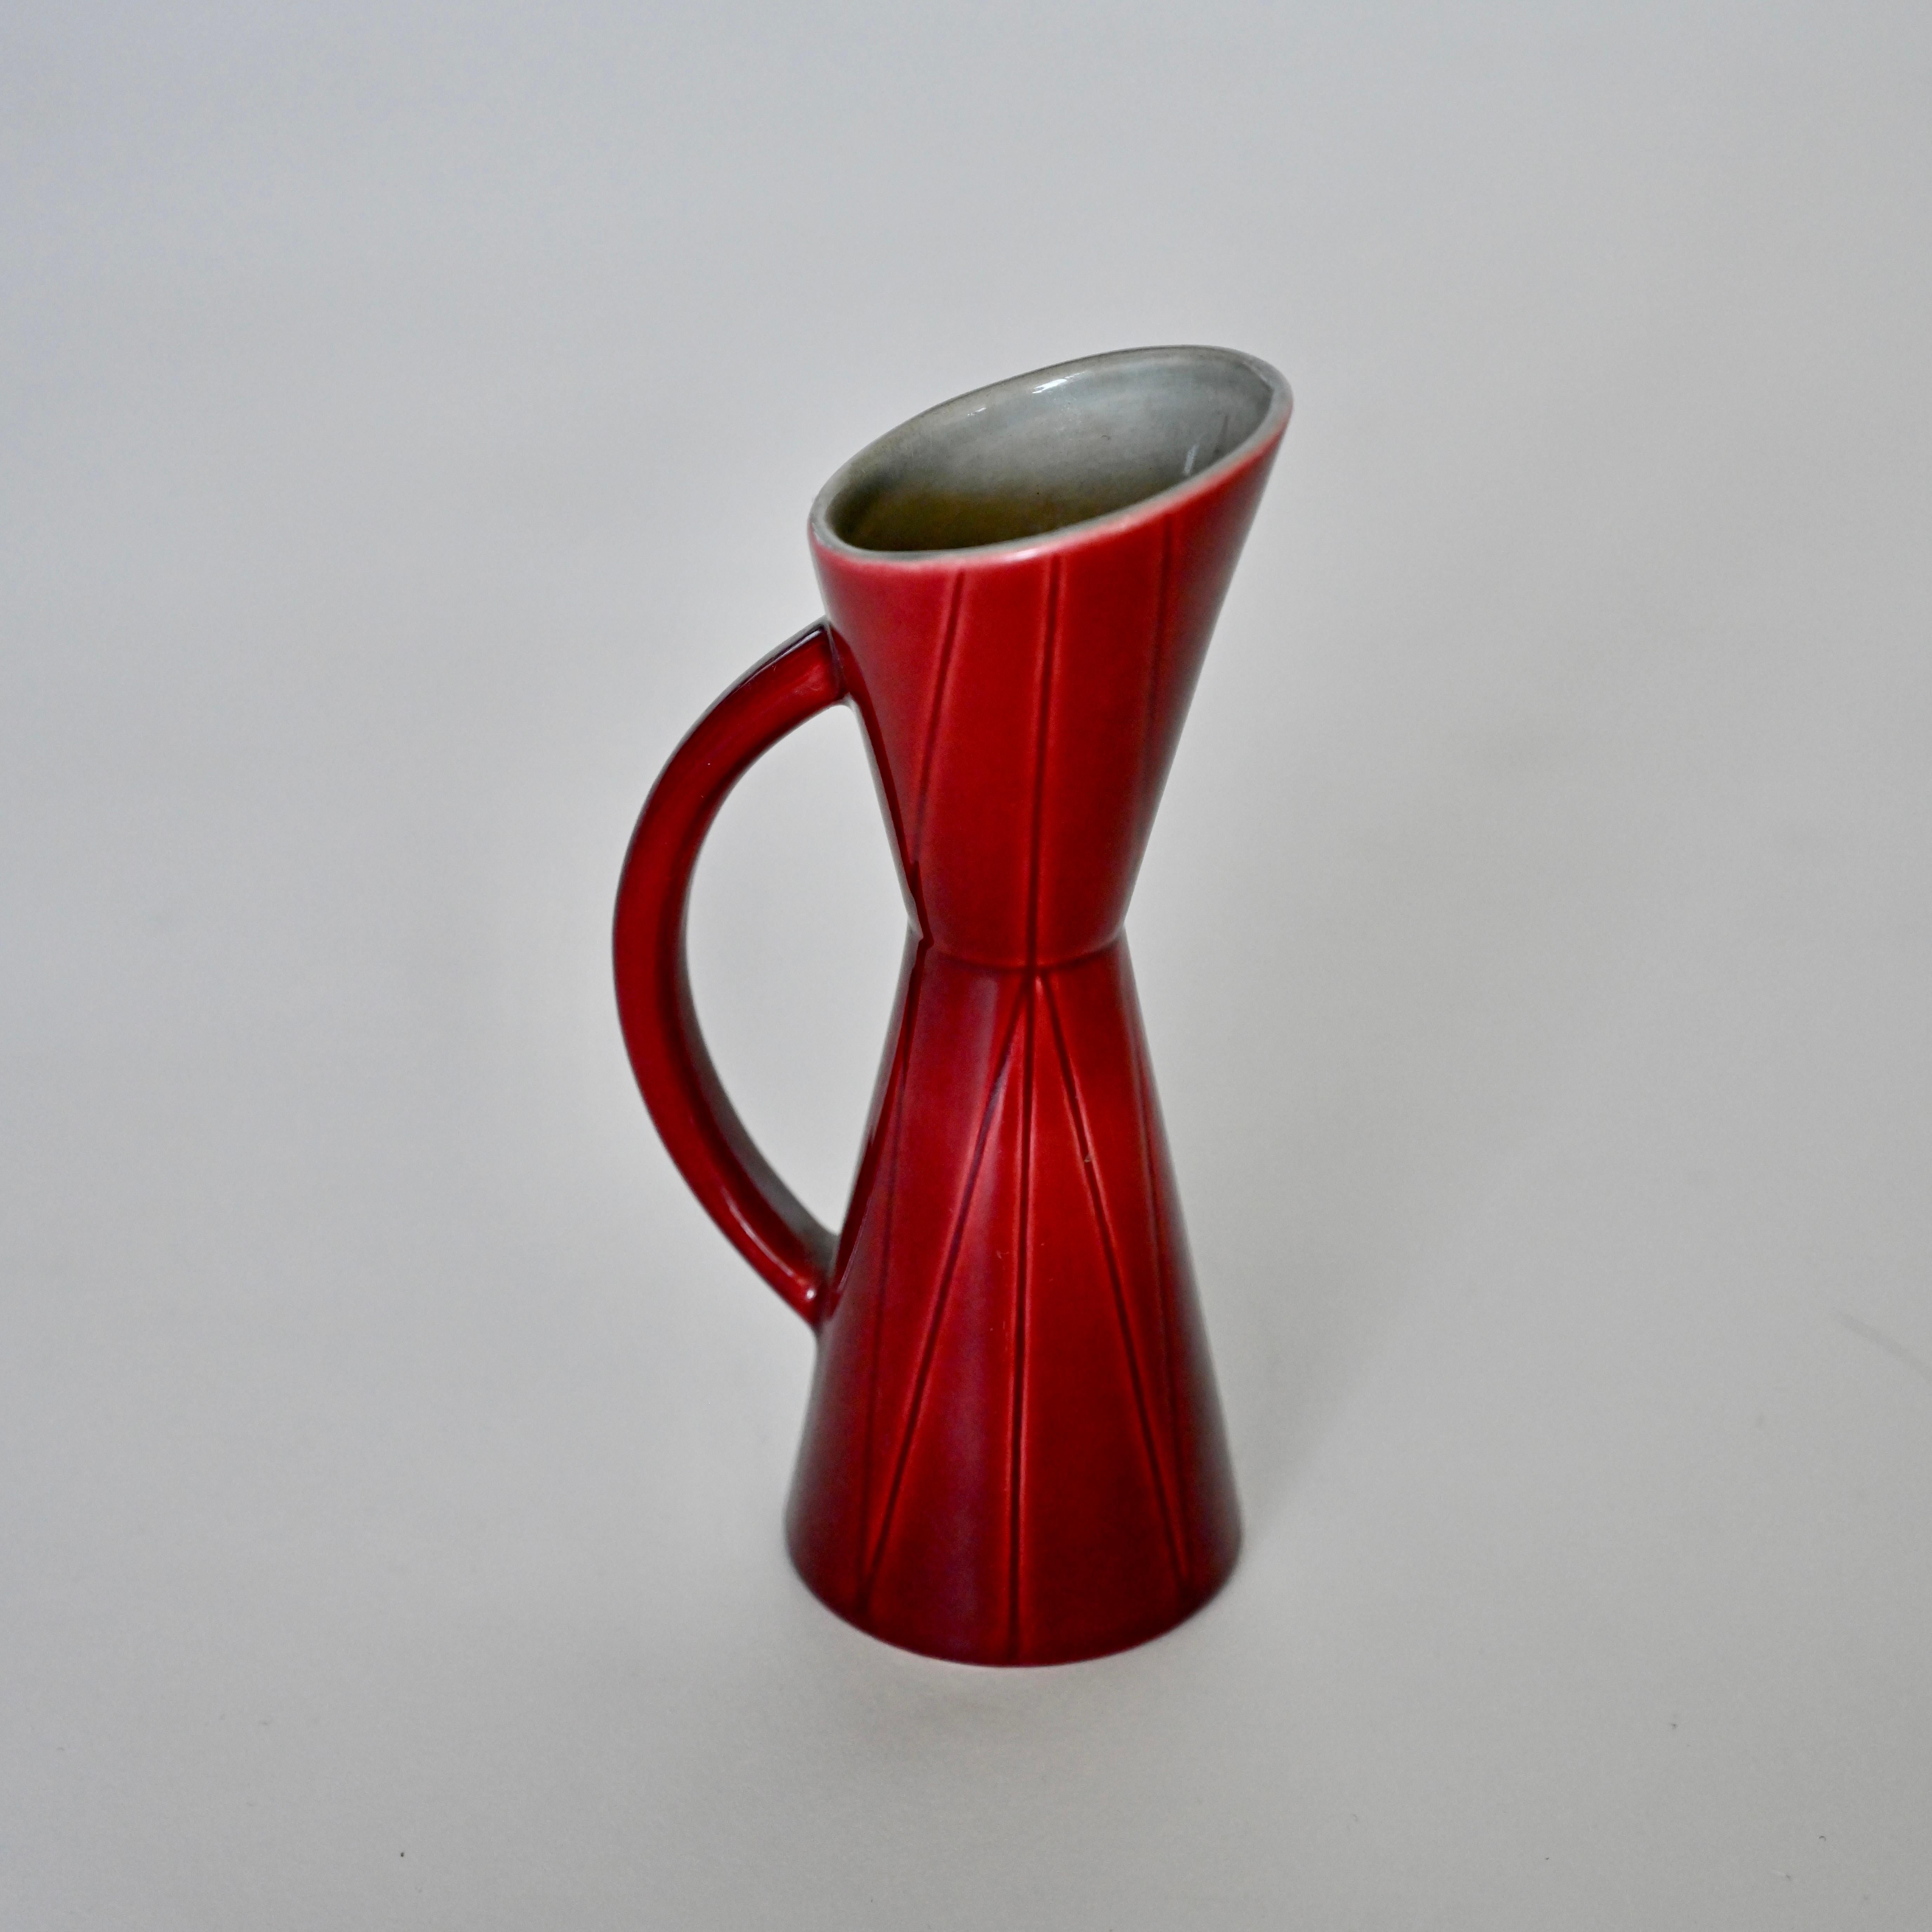 Magnifique pichet / vase avec une riche glaçure rouge. Marqué Rörstrand à la base. Suède, milieu du 20e siècle.